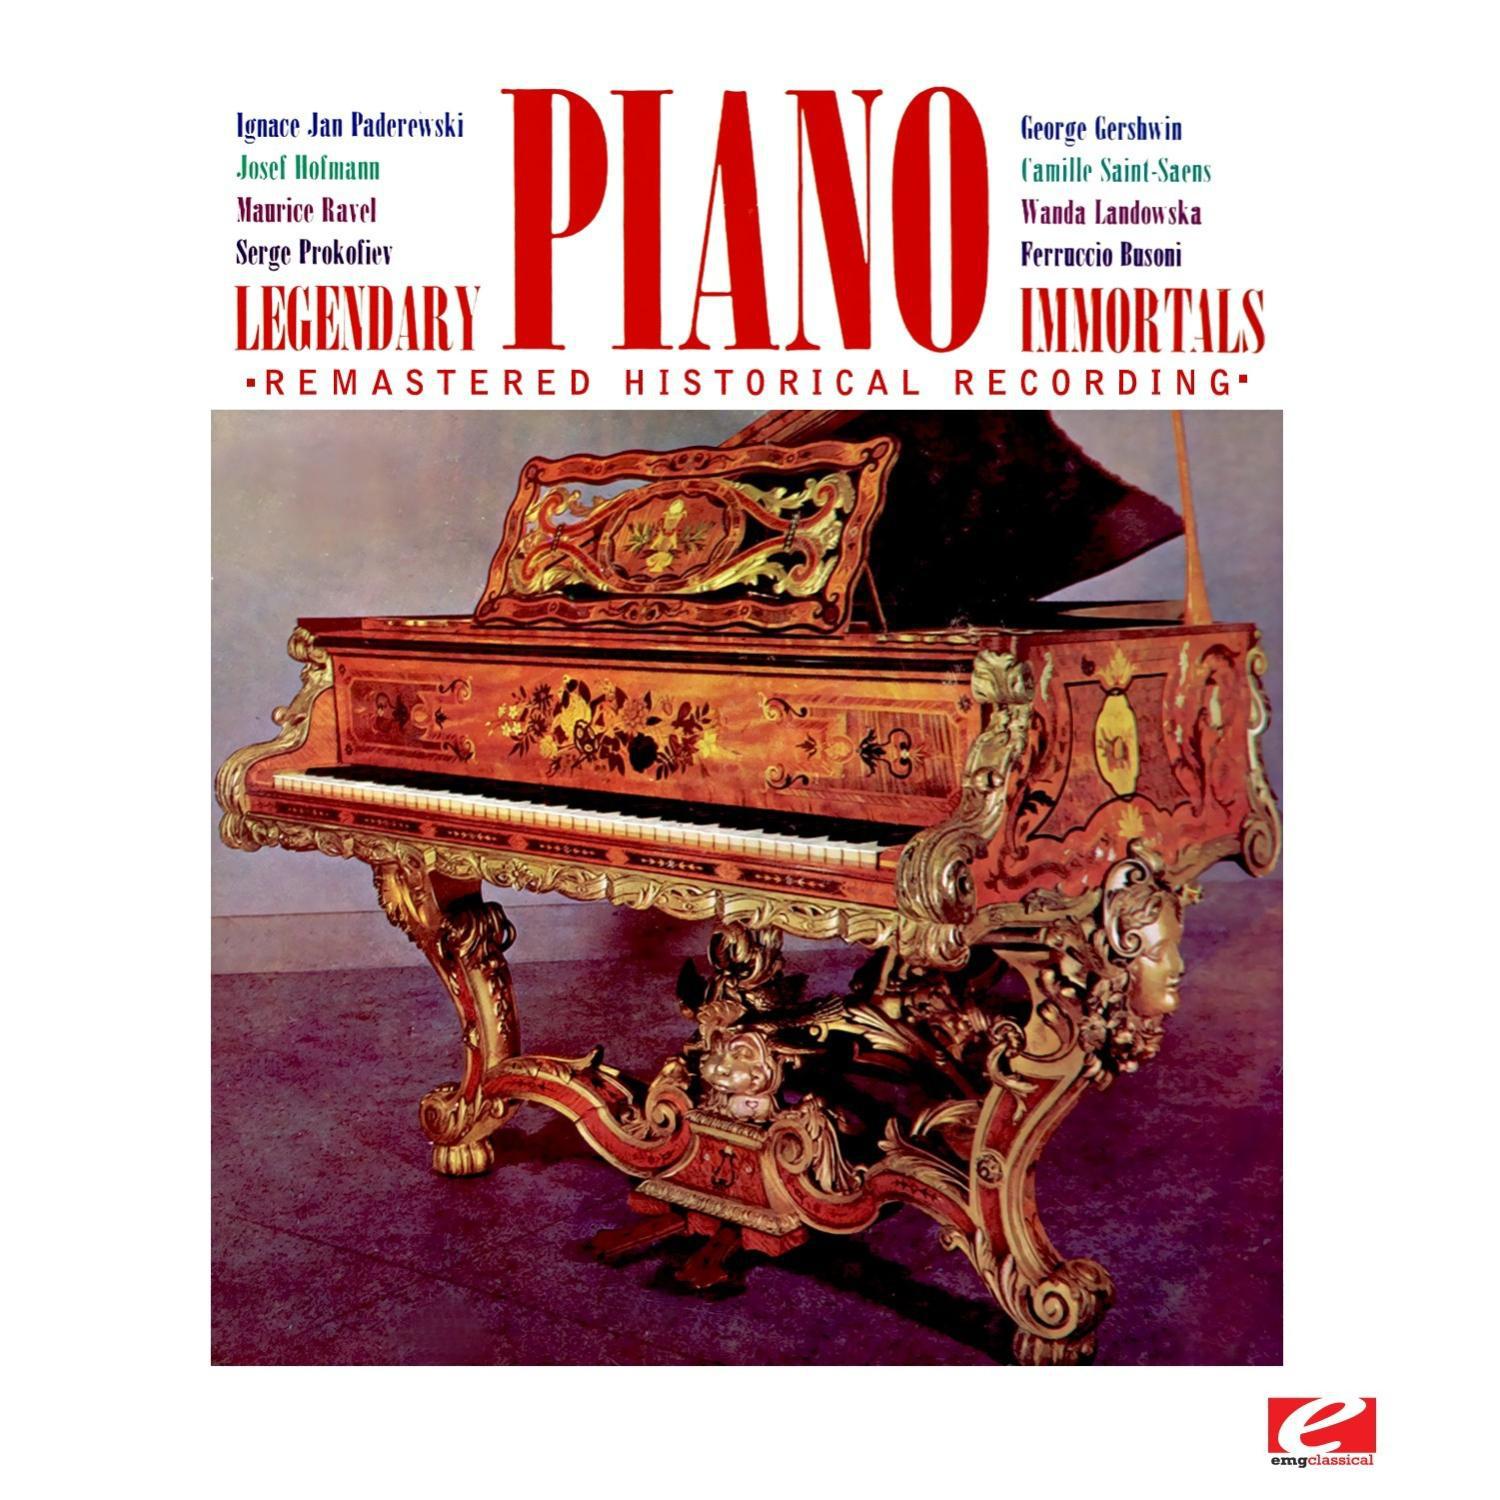 Sonata No. 17 in D Major for Piano, K.576: I. Allegro